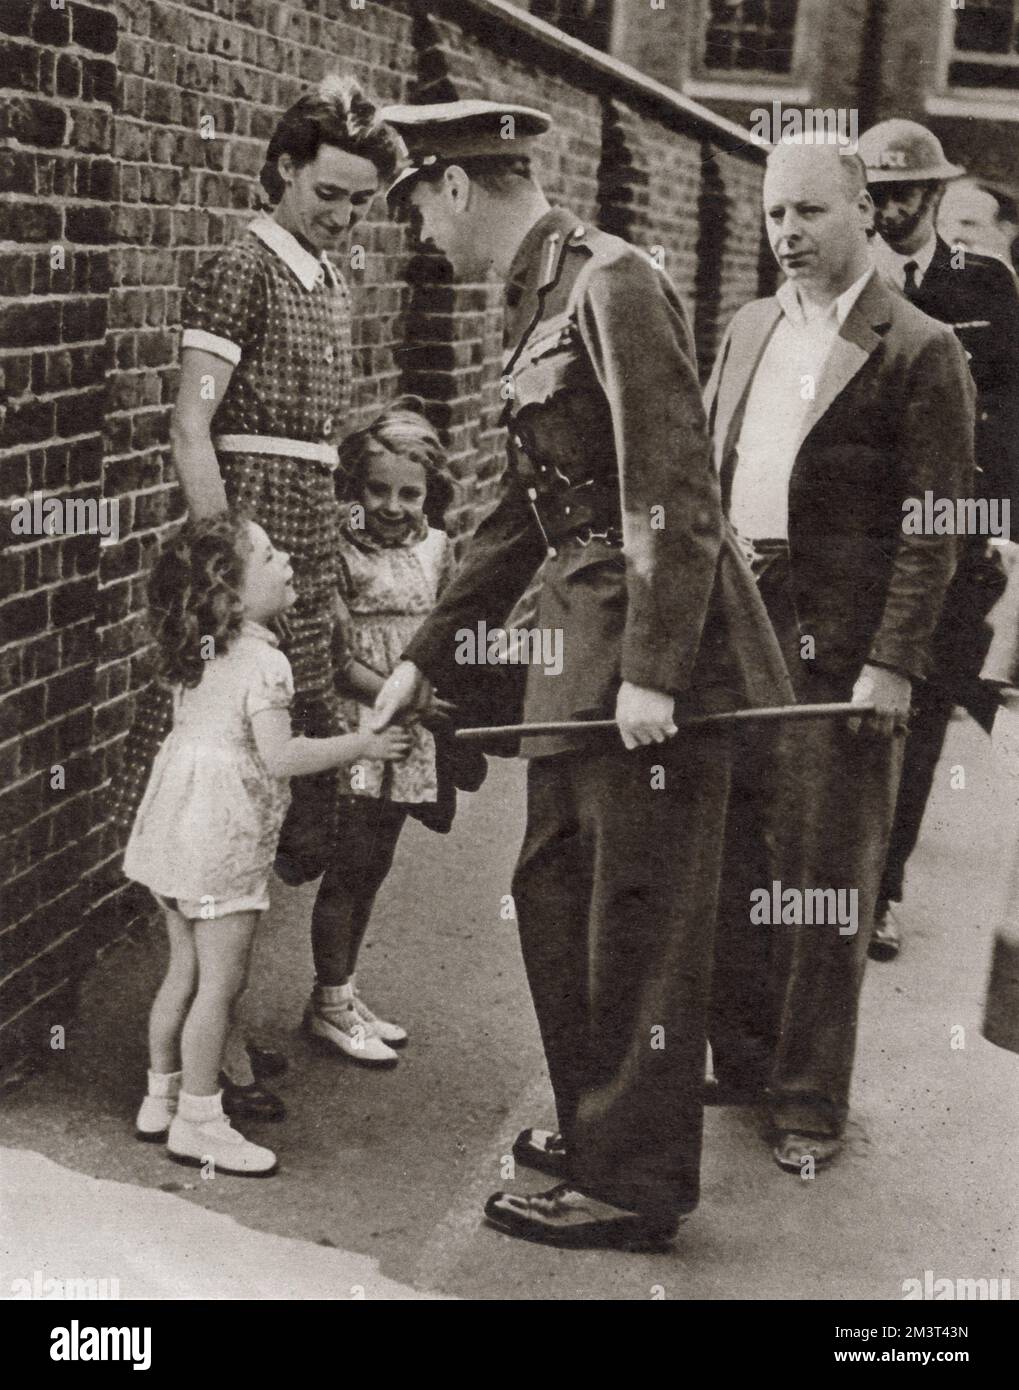 Der Besuch von König George VI im bombenzerstörten East End von London im September 1940: Händeschütteln mit der kleinen Tochter Joan Miles, der Hausmeisterin einer Schule, die bombardiert wurde. Stockfoto